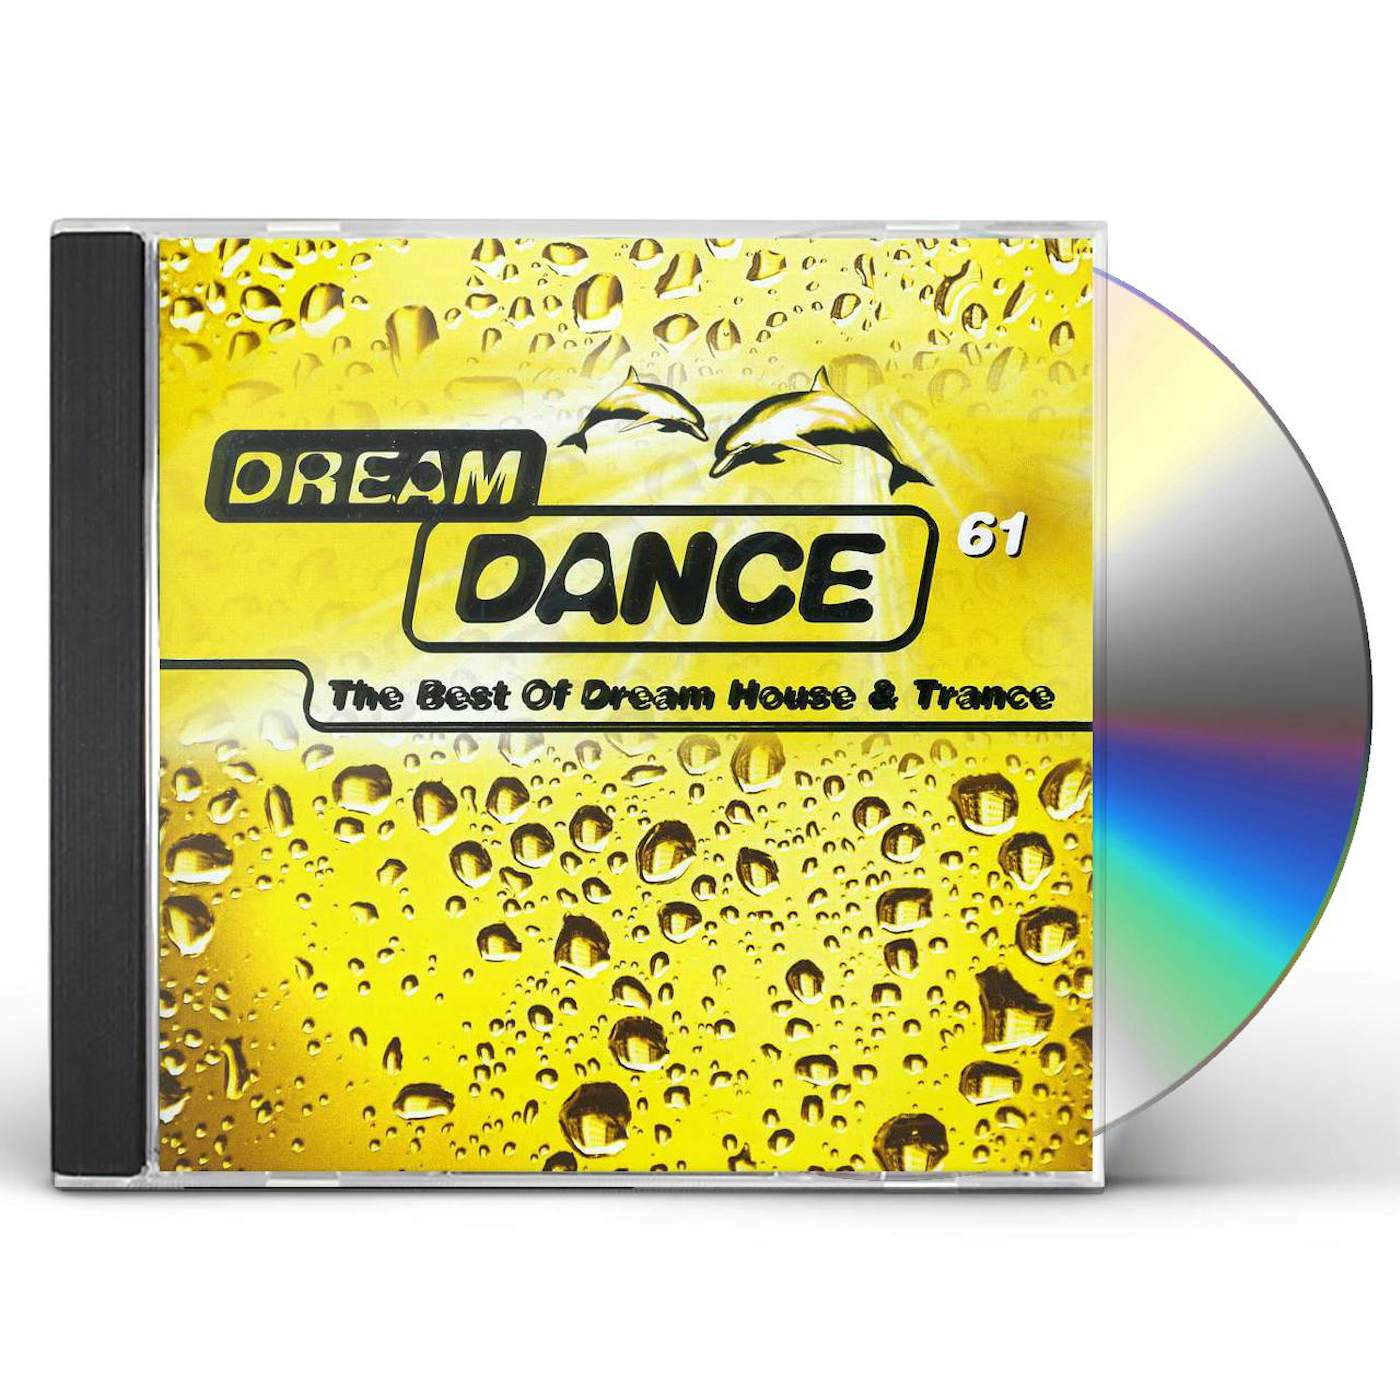 VOL. 61-DREAM DANCE CD